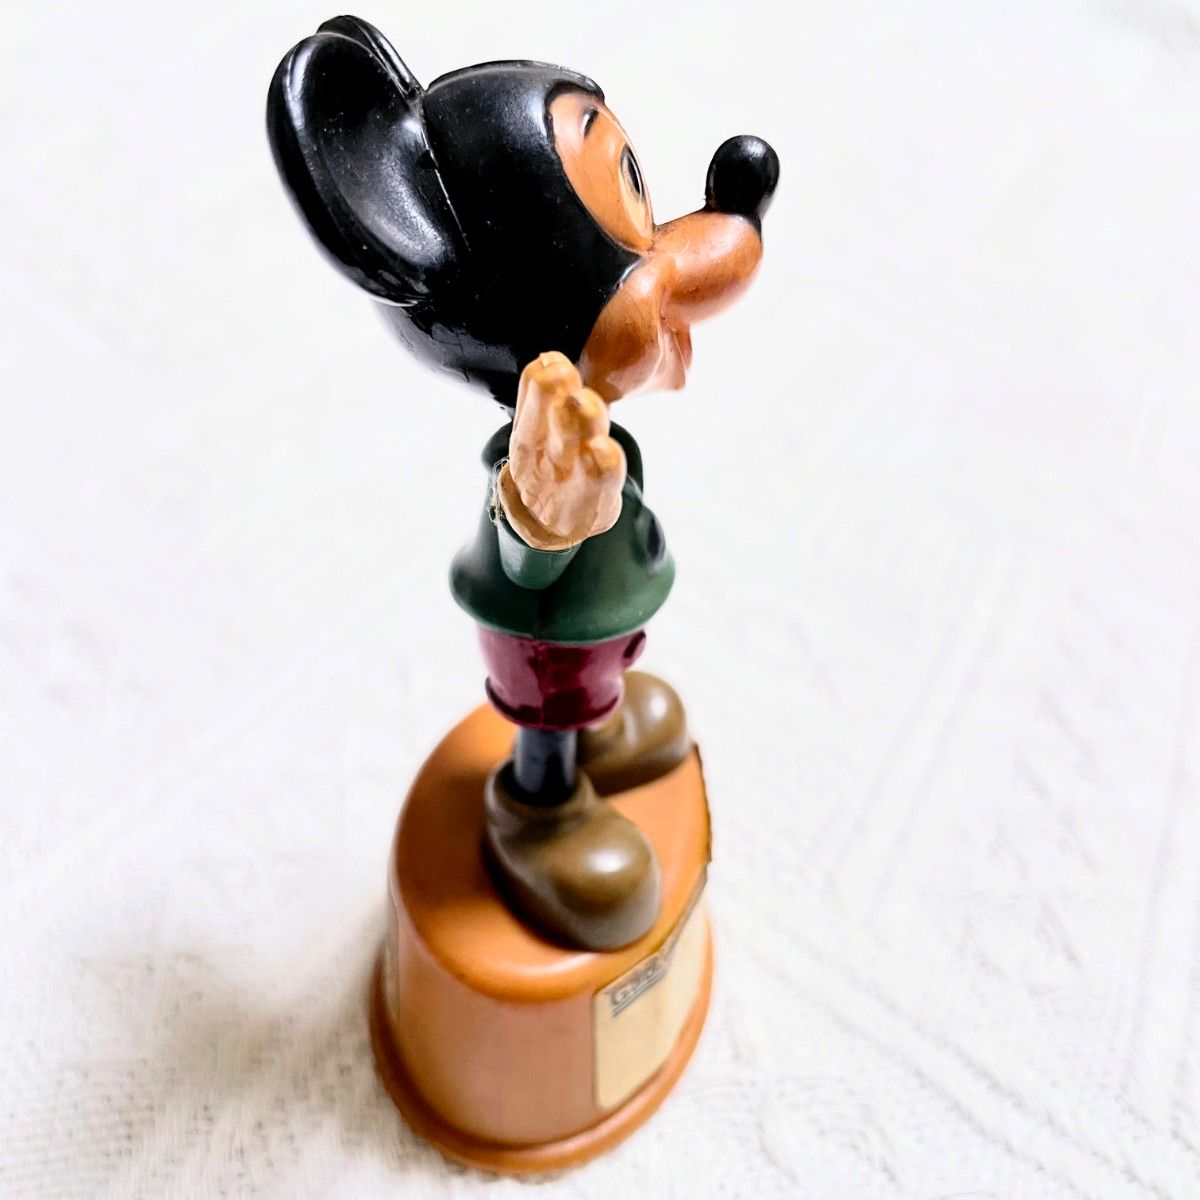 ディズニー ミッキーマウス Mickey Mouse push up puppet レトロ プッシュアップパペット